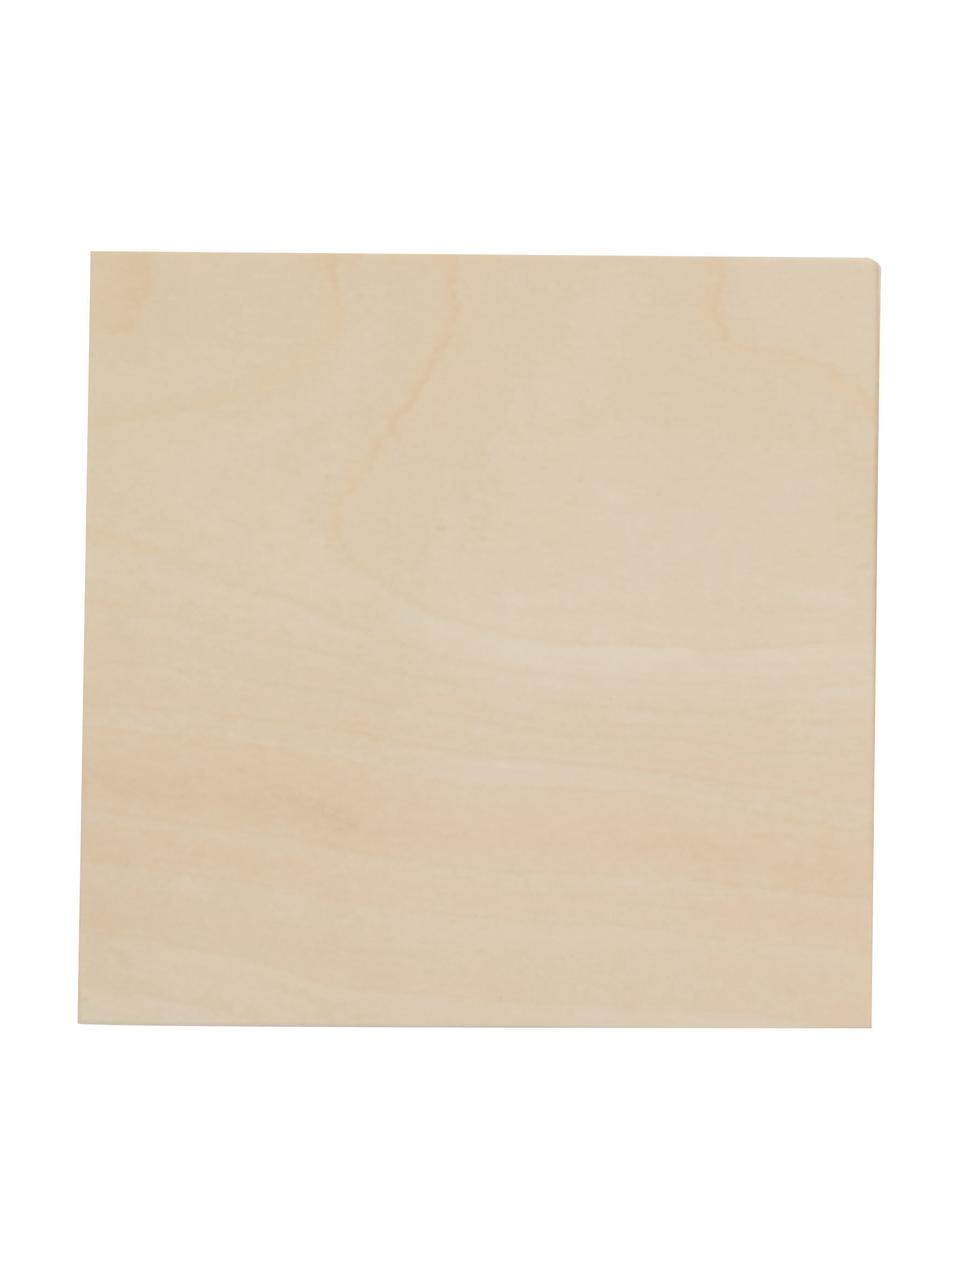 Kleine Wandleuchte Quad aus Holz, Lampenschirm: Holz, Beige, B 10 x H 10 cm